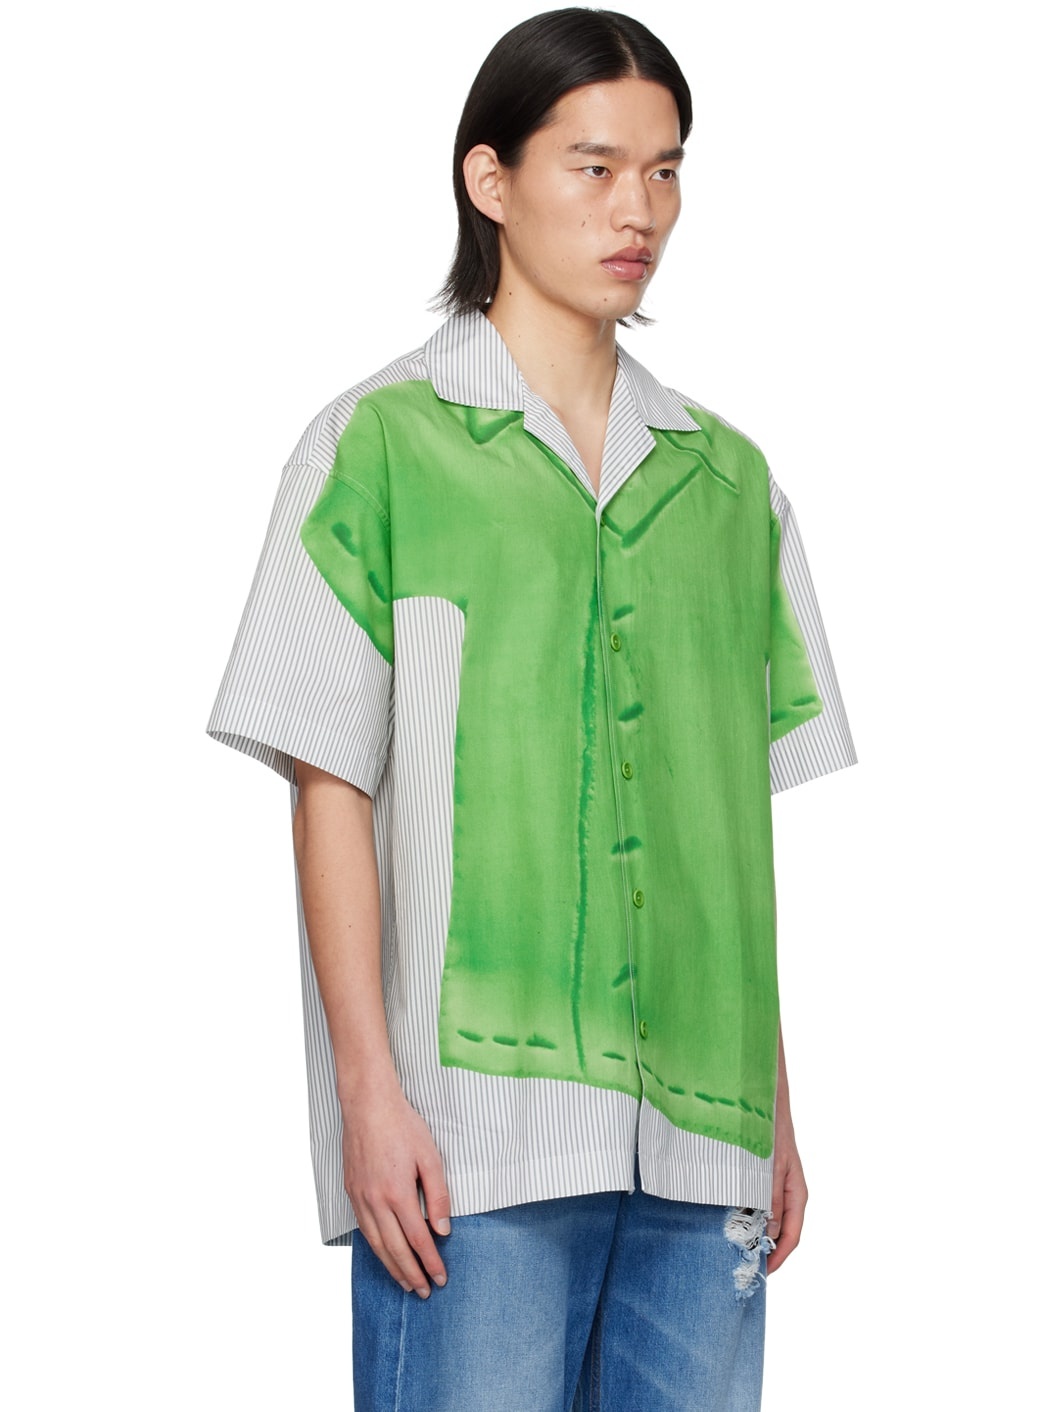 Green & Grey Printed Shirt - 2